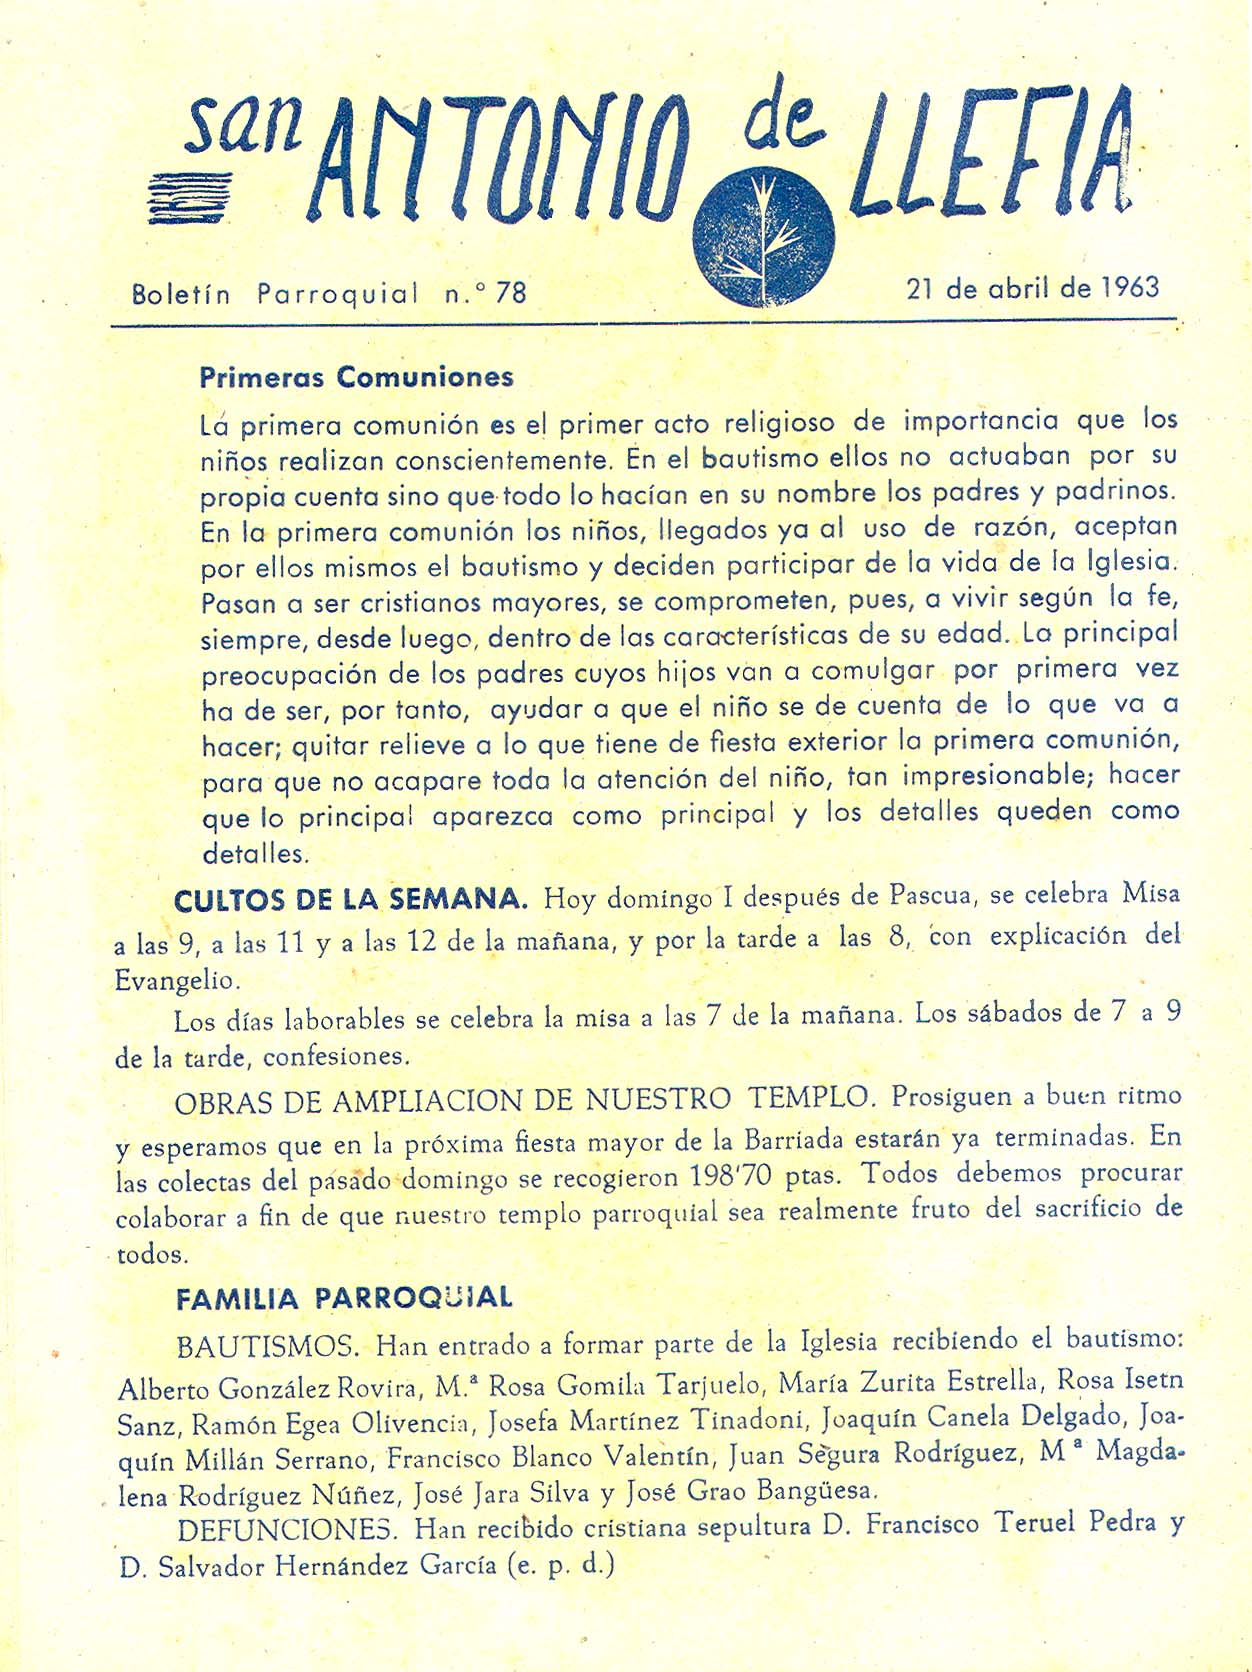 1963 Boletin parroquial nÃºm 78